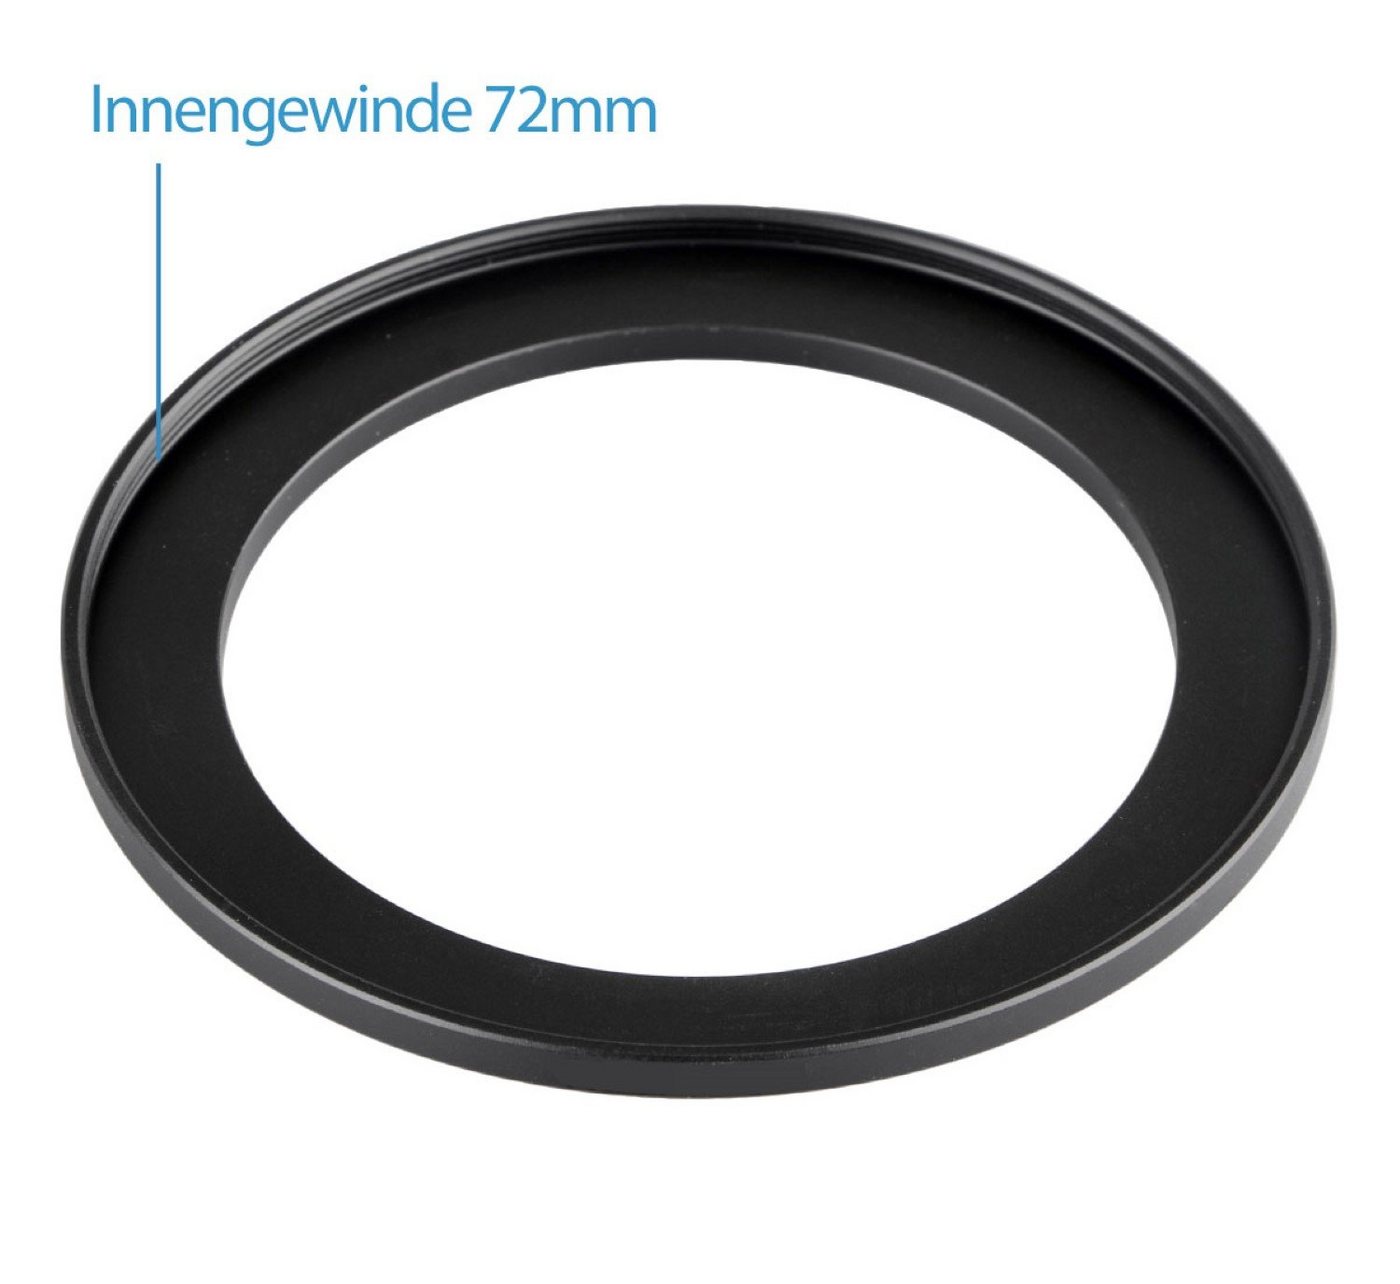 ayex Step-Up Ring 52-72mm Reduzierring Adapterring für alle Hersteller Foto-Filter-Sets von ayex